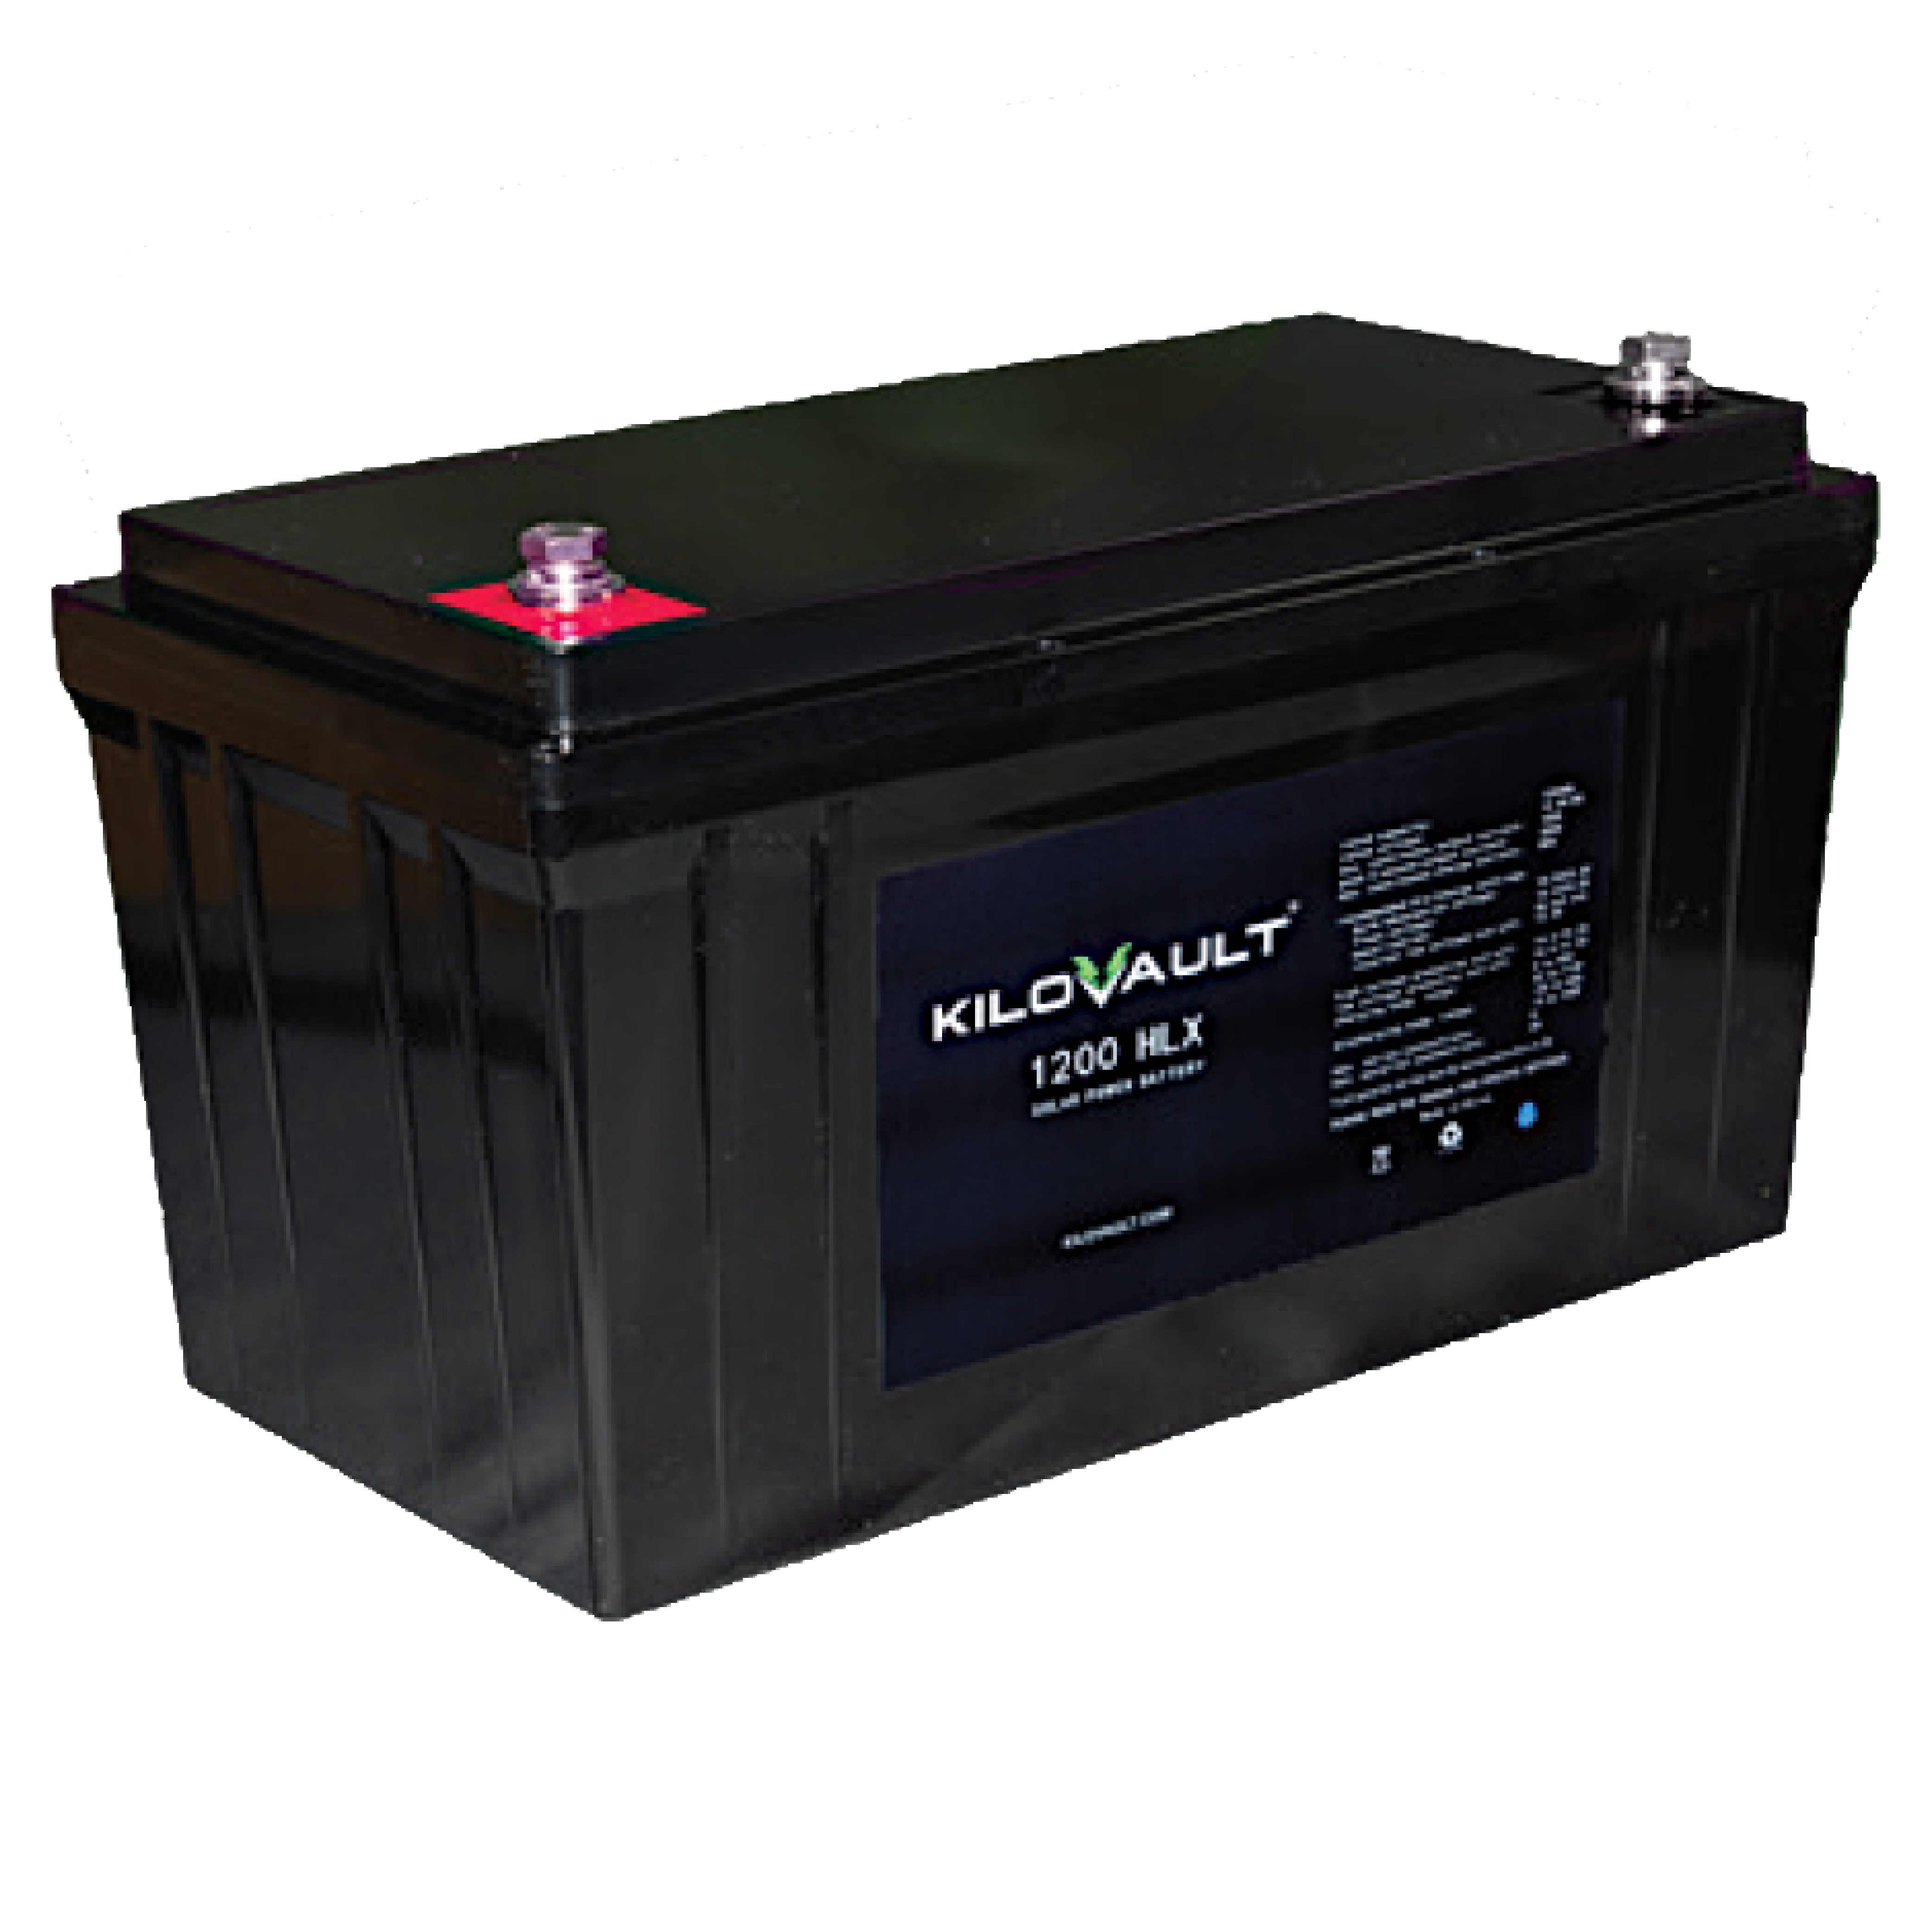 KiloVault HLX 1200 Battery